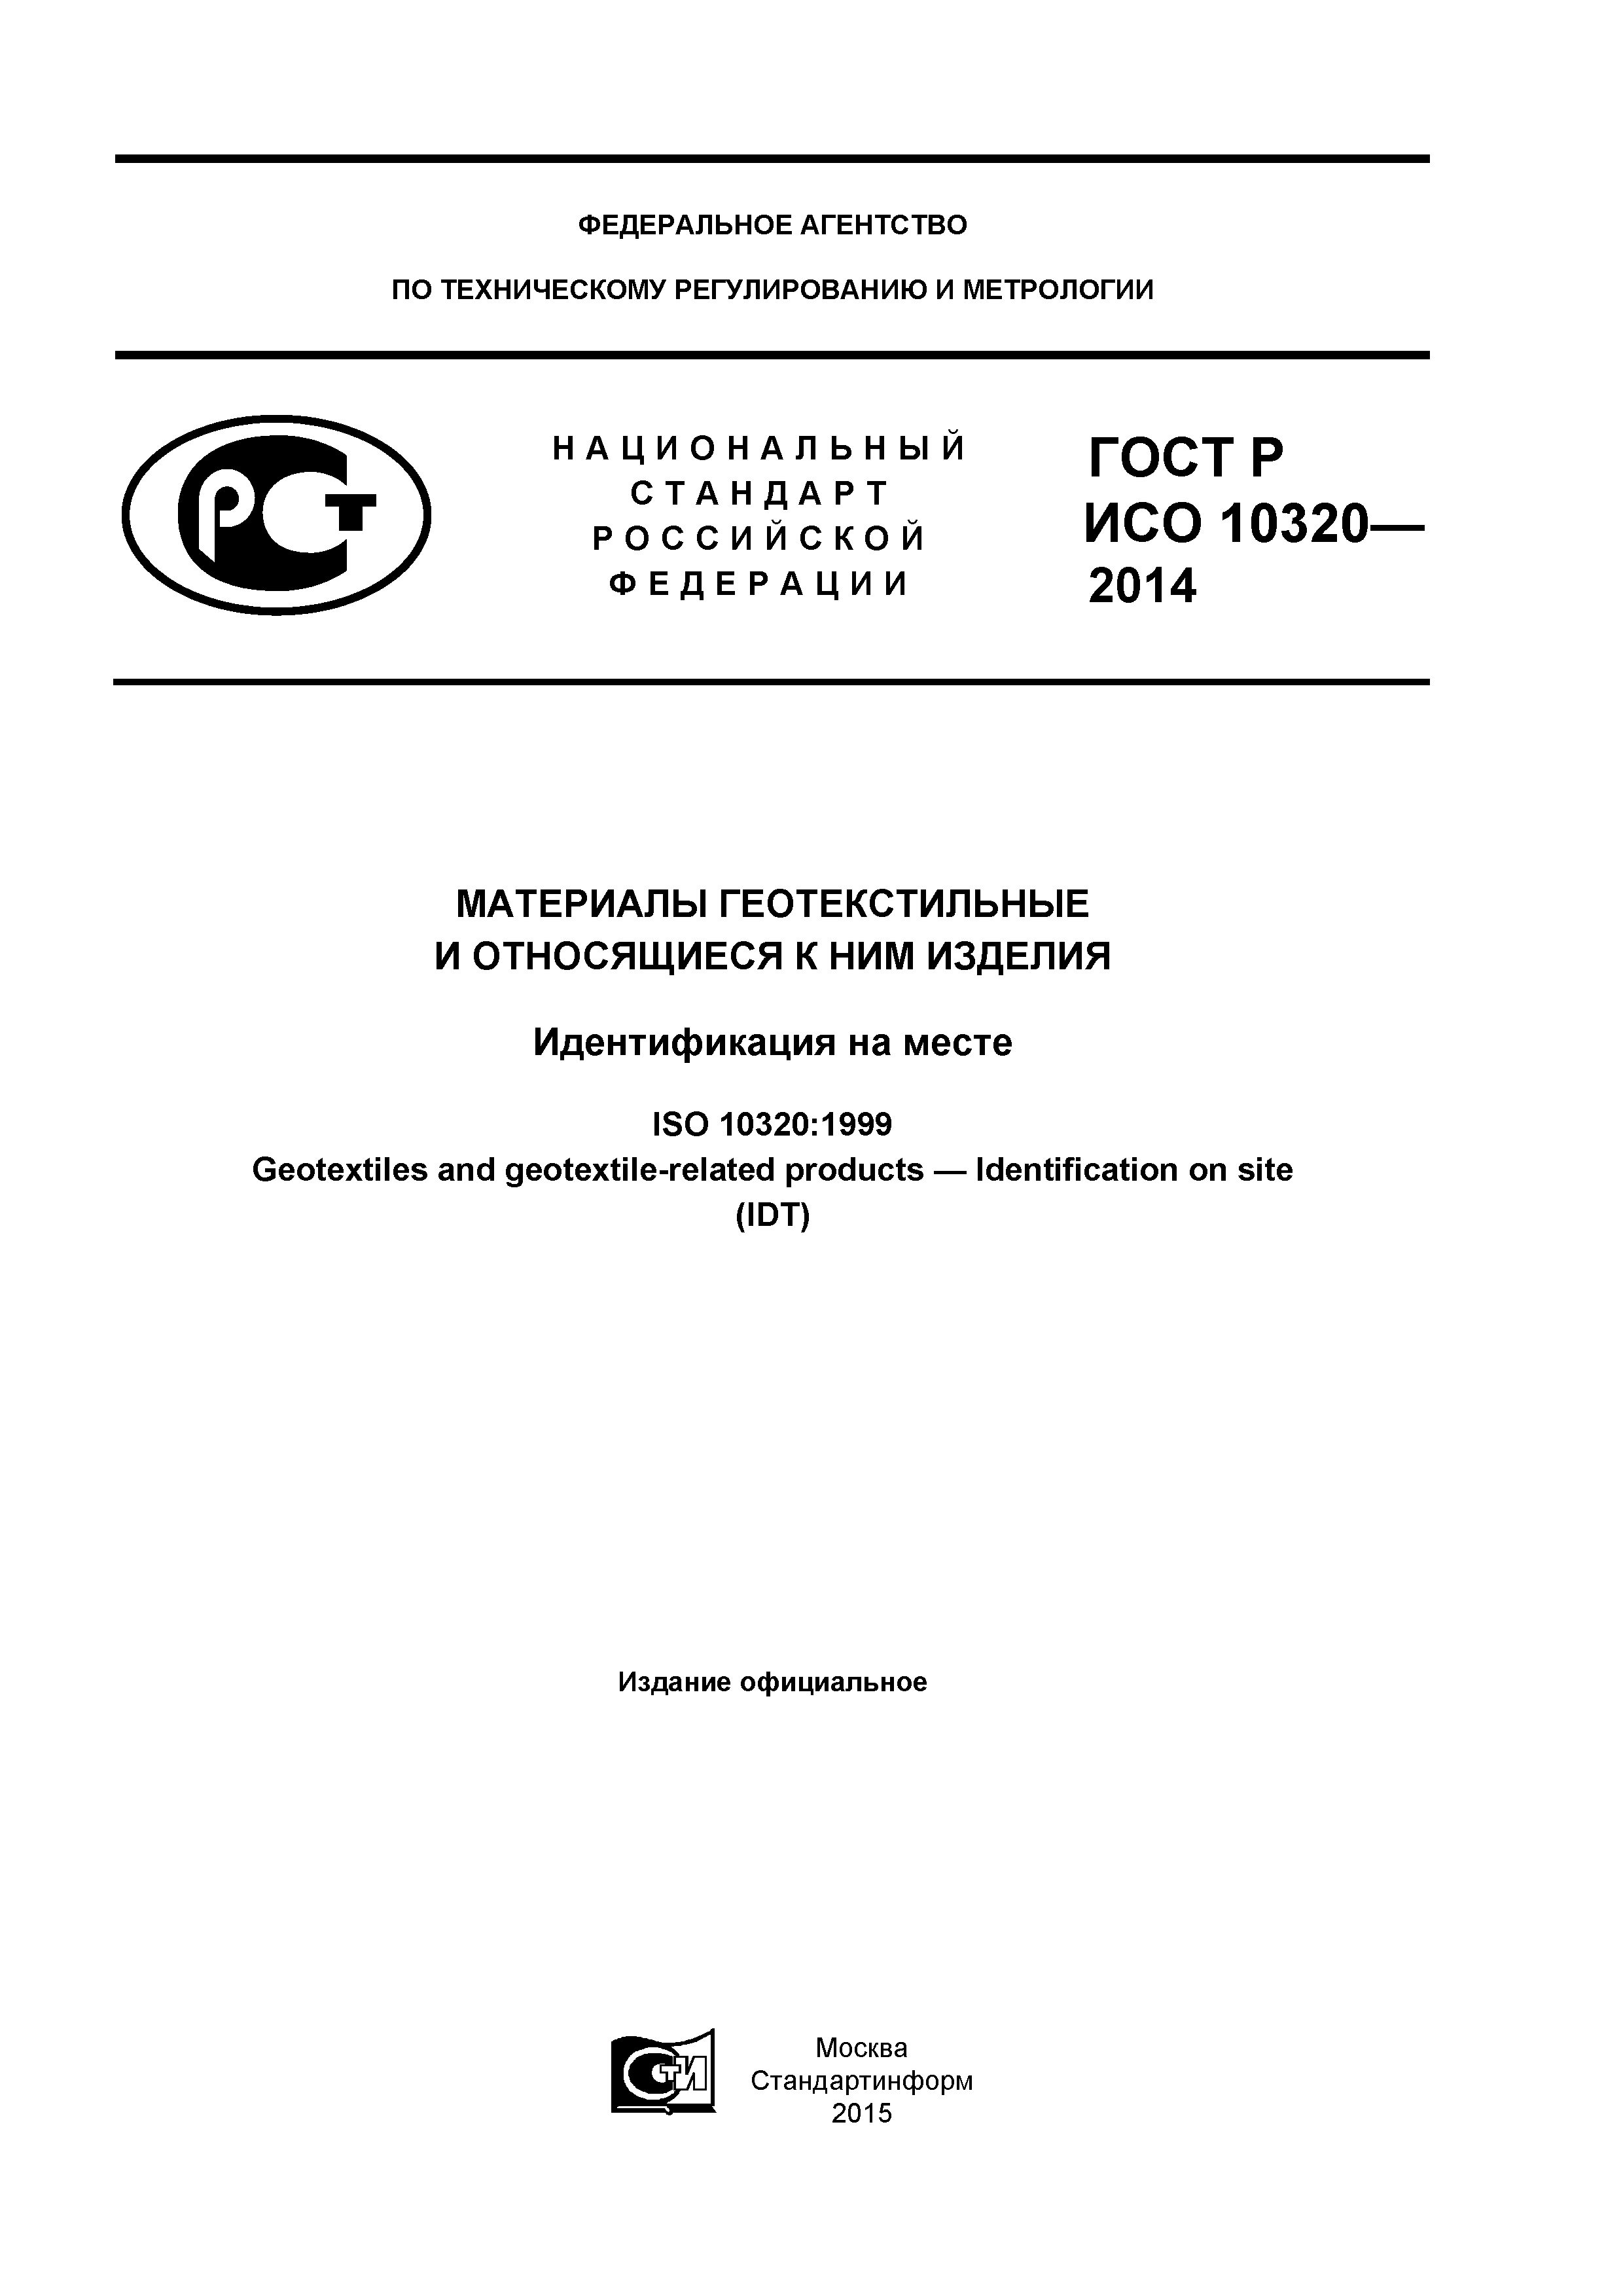 ГОСТ Р ИСО 10320-2014